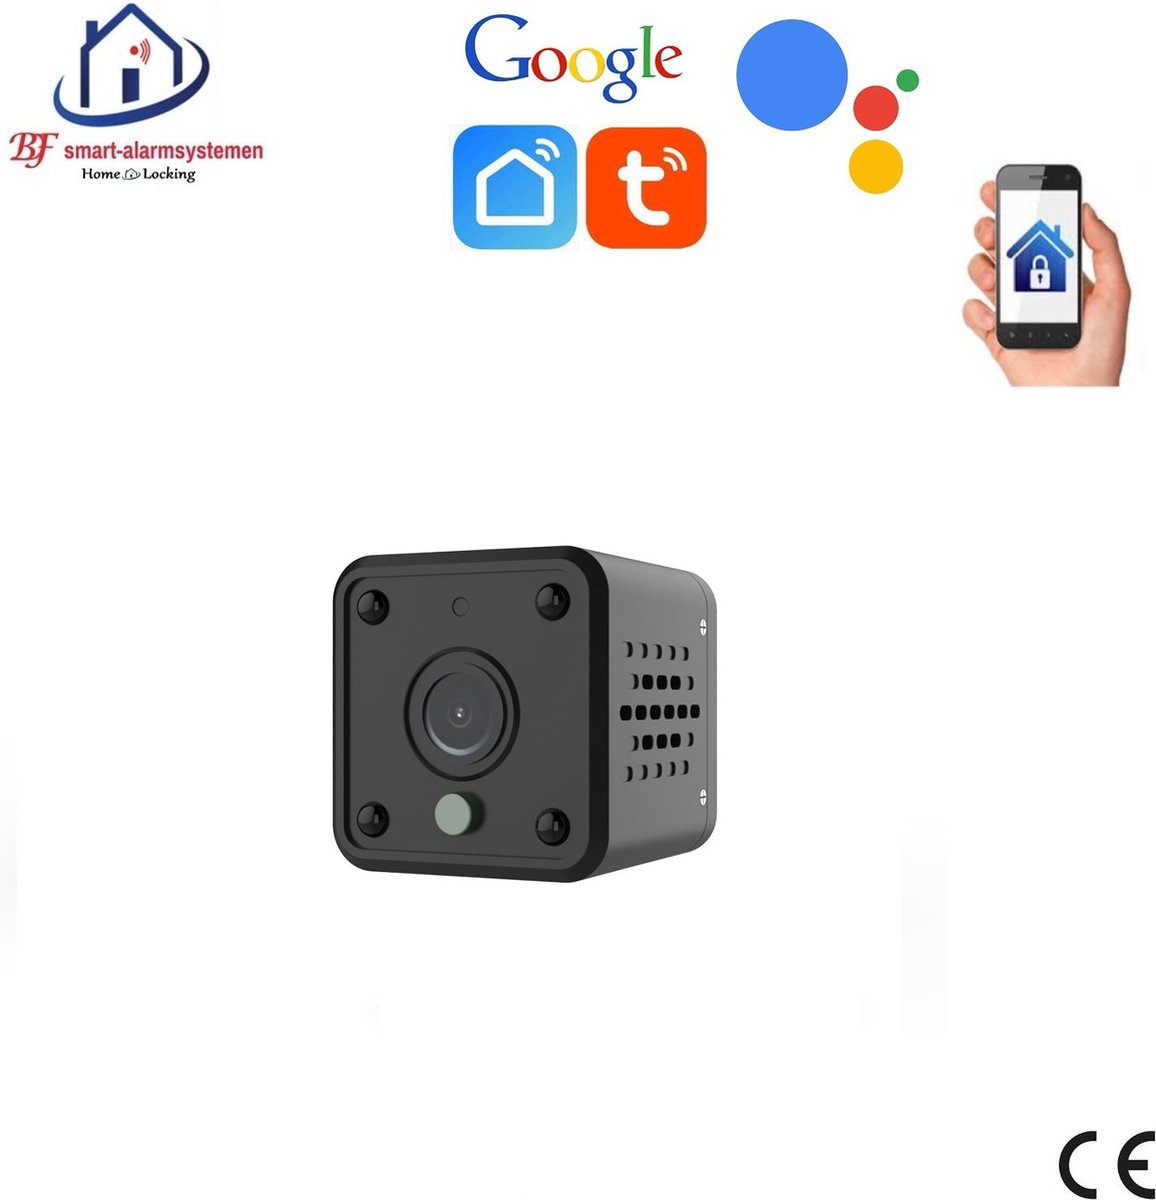 Nince Smart avec caméra 1080P et application - Possibilité d